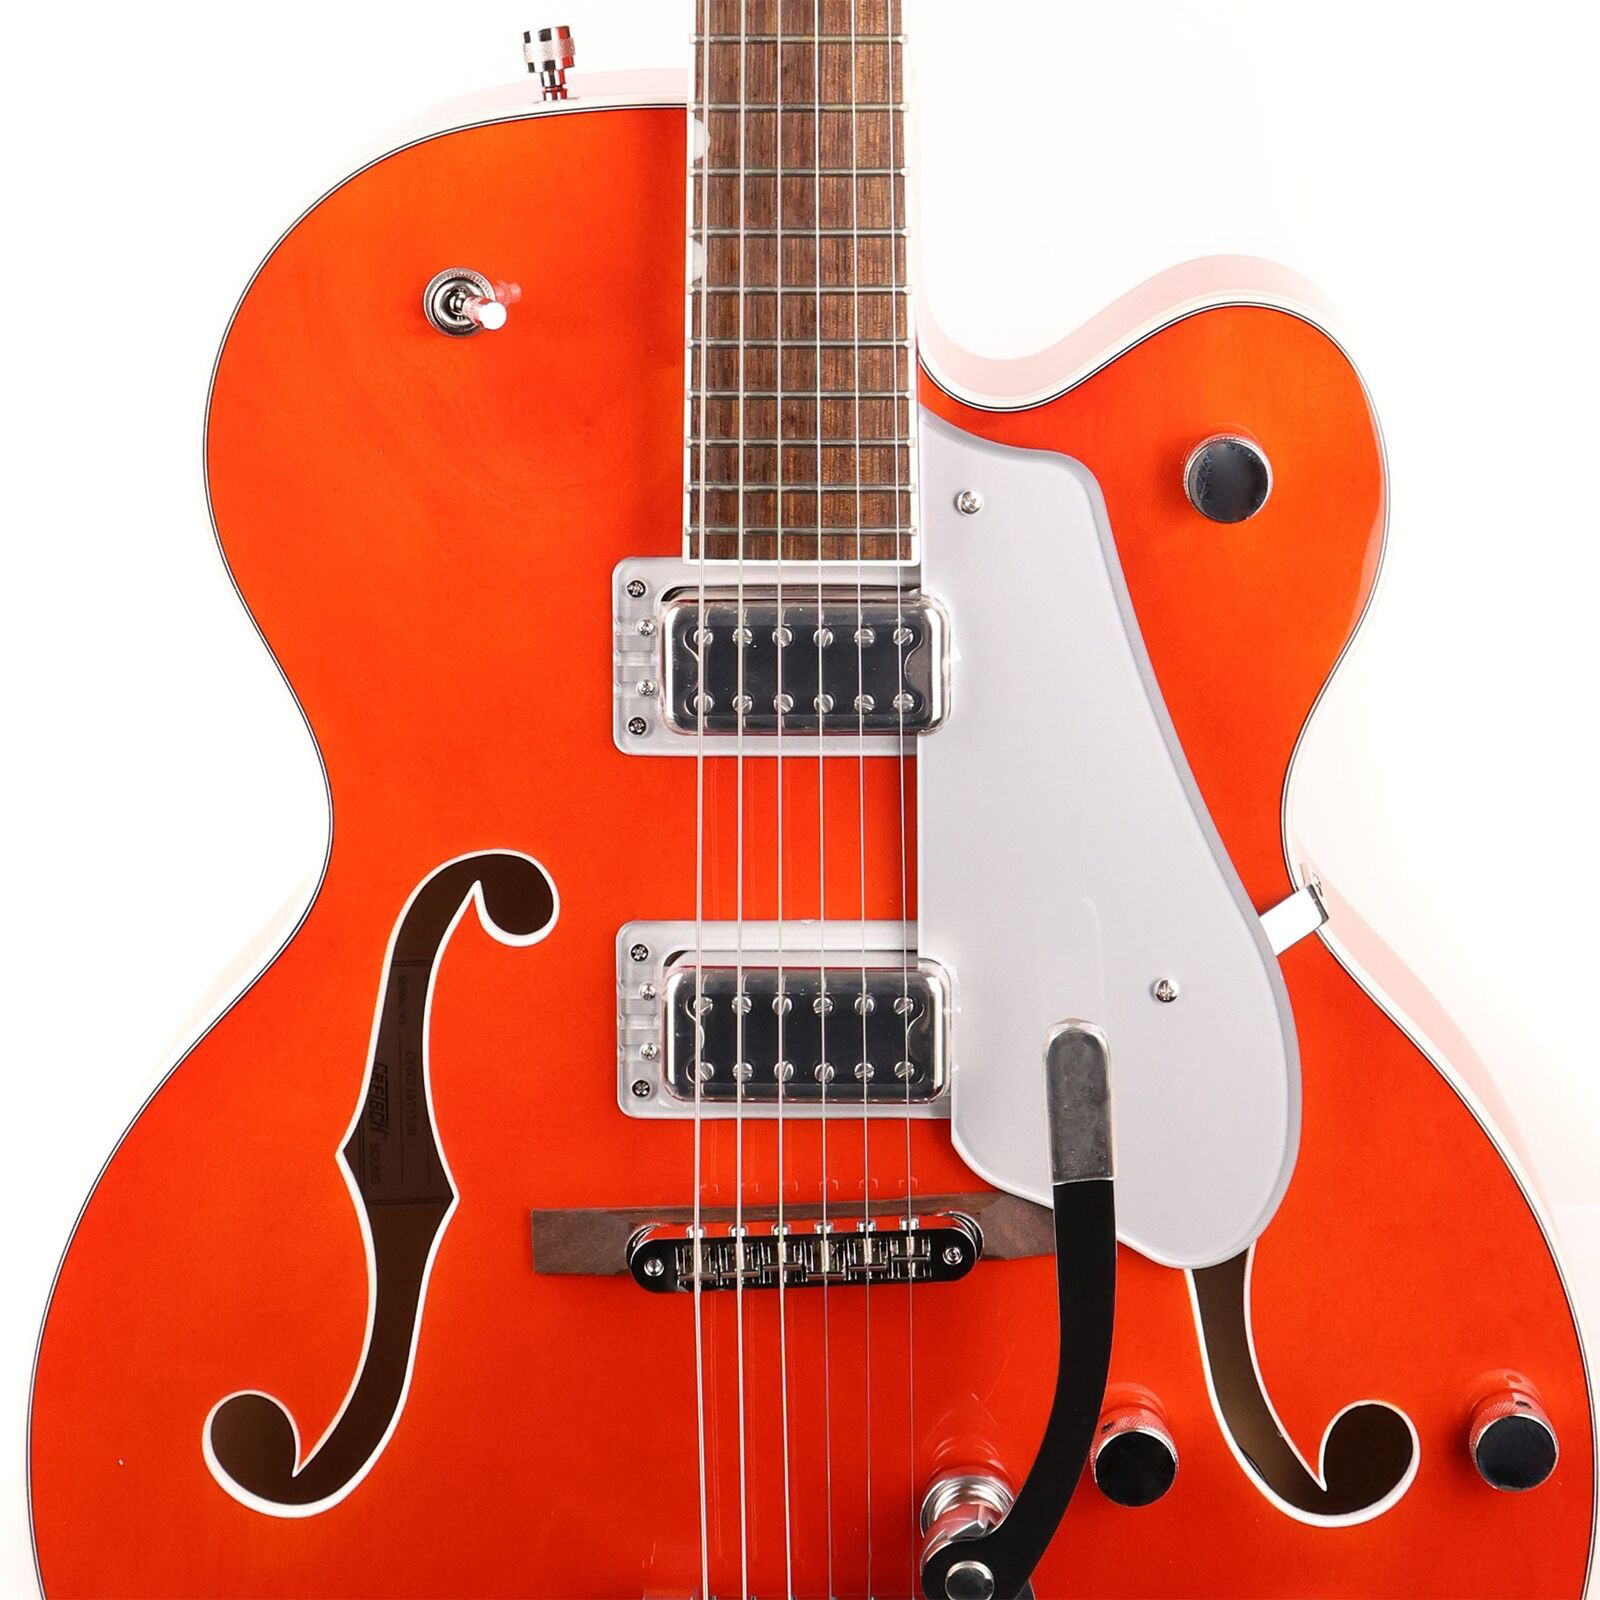 G5420T Electromatic Classic Hollow Body Single-Cut avec guitare électrique Orange St comme sur les images